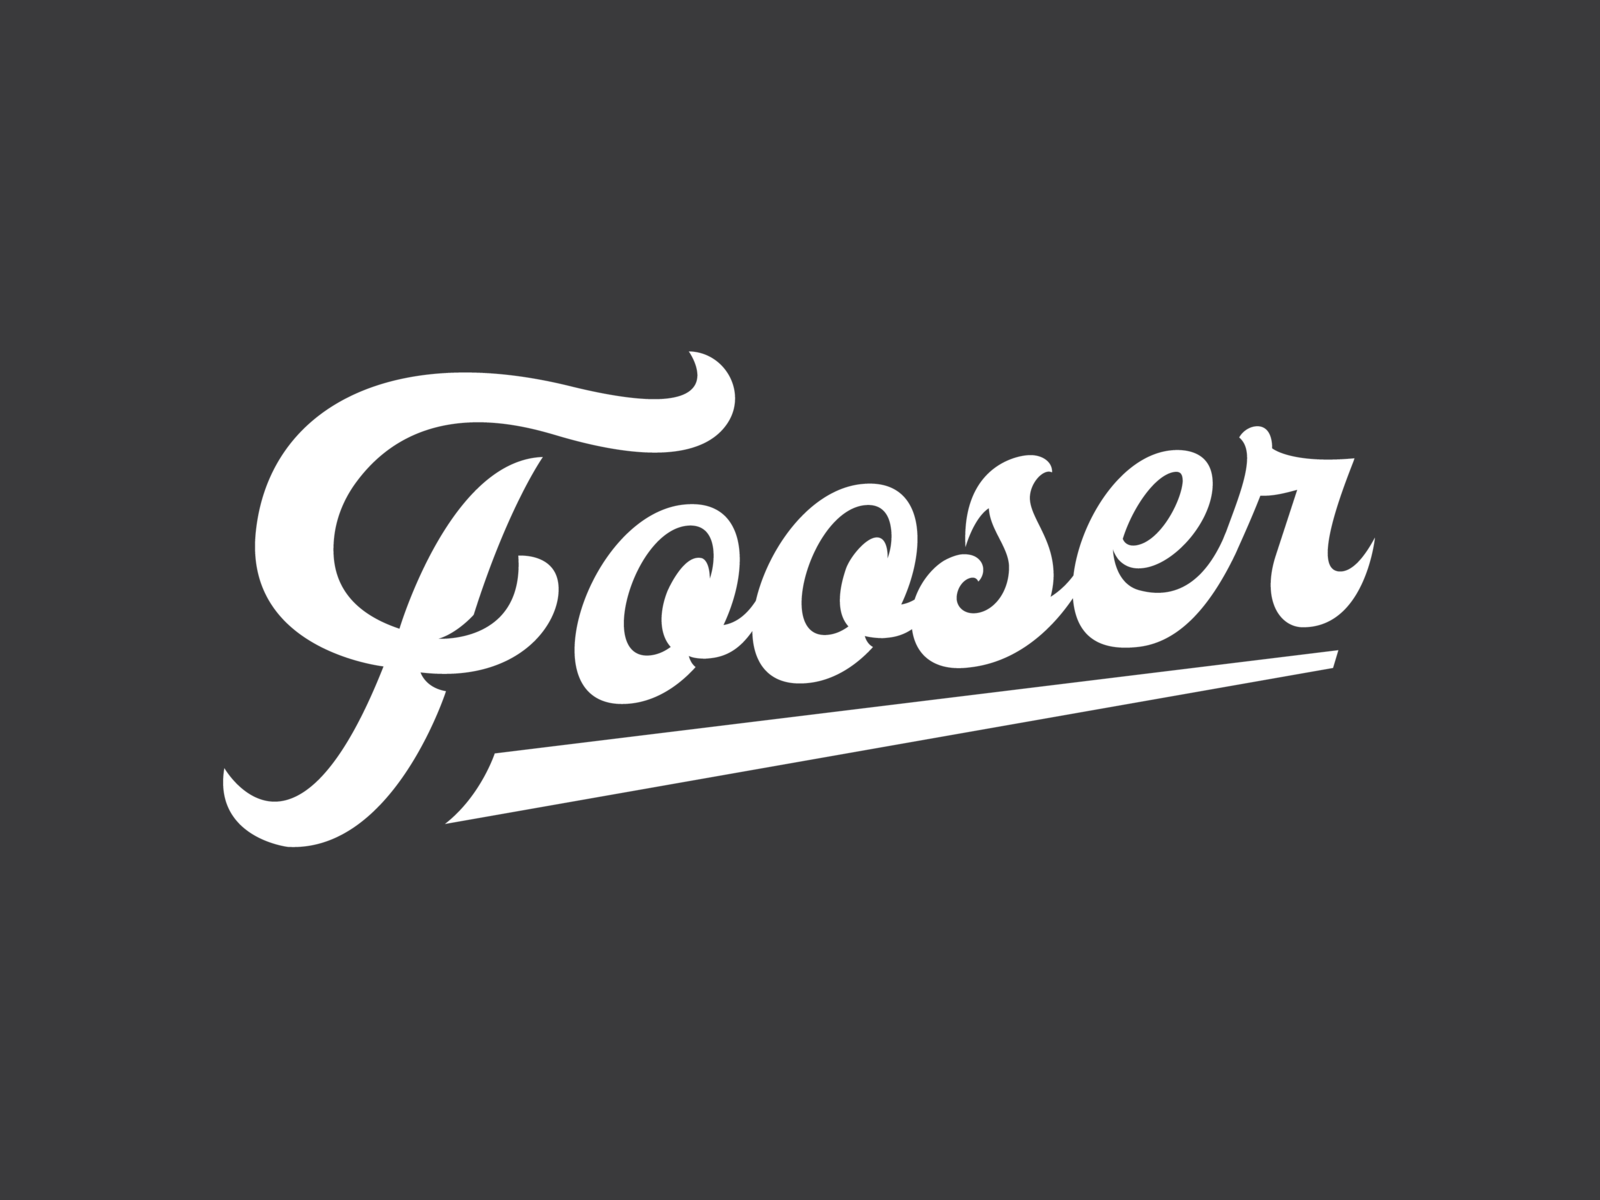 New Fooser...New Team by Ryan Foose on Dribbble